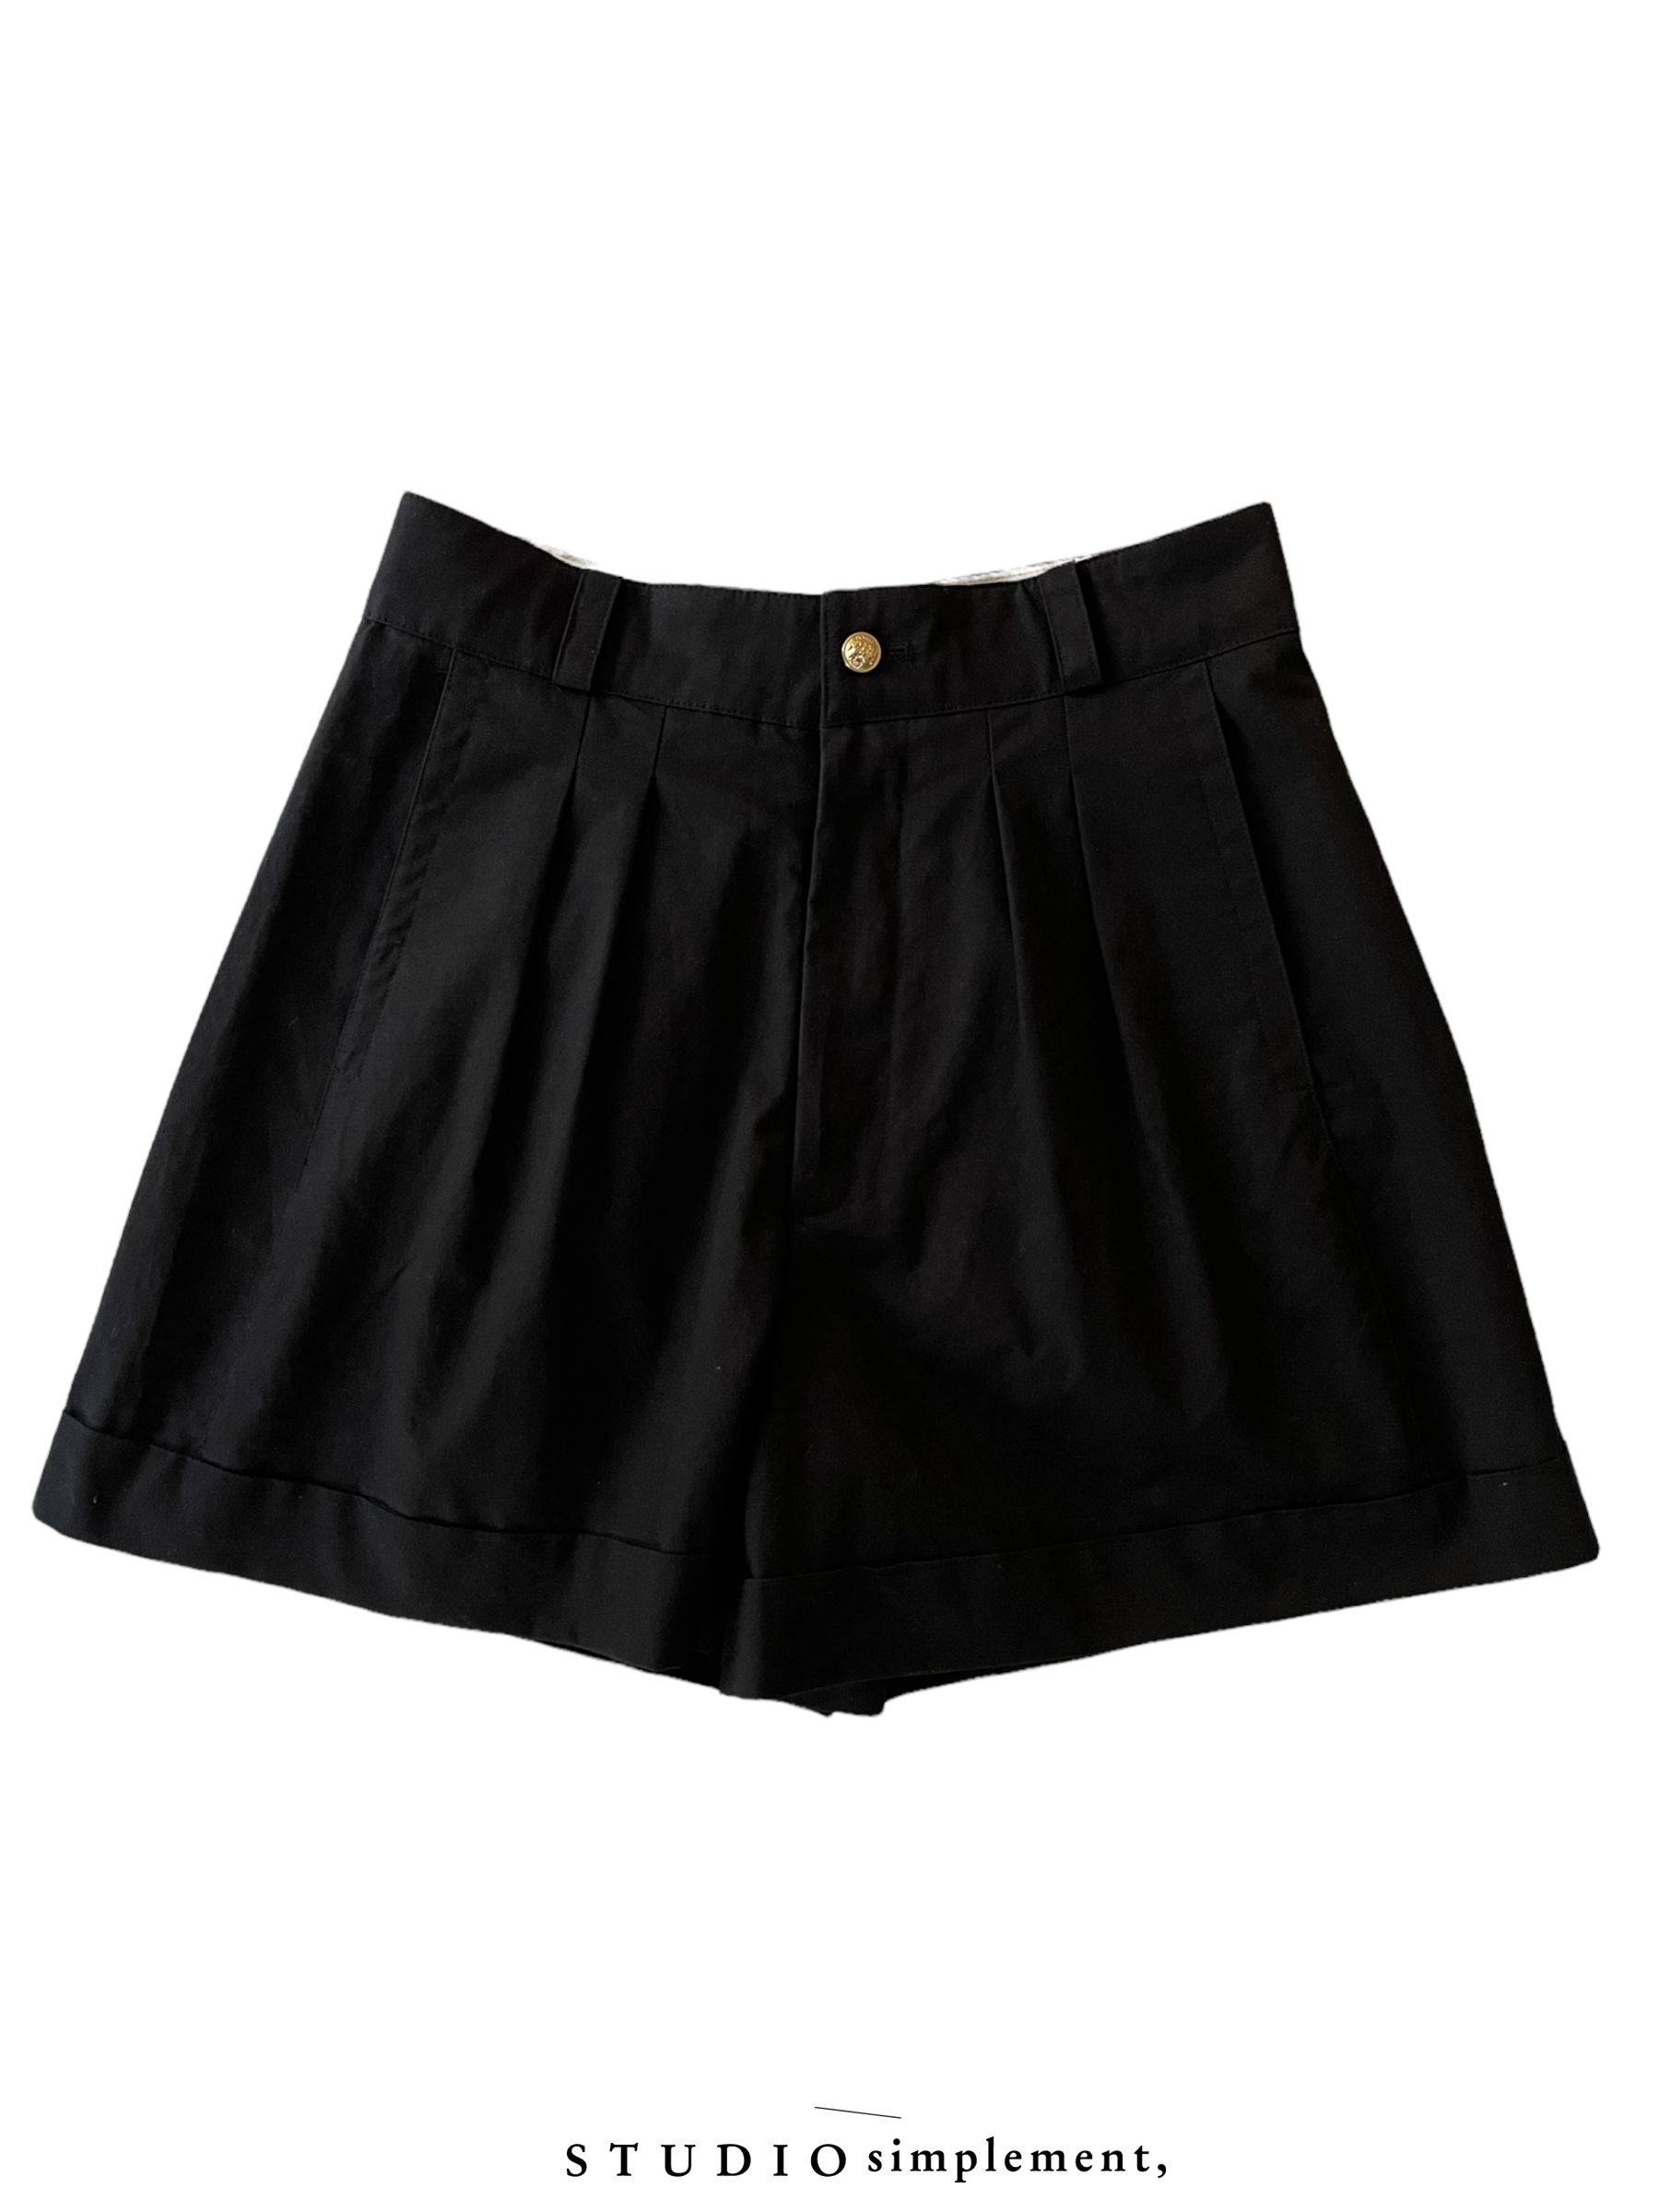 270 Boyscout Shorts - black (Pre-order)